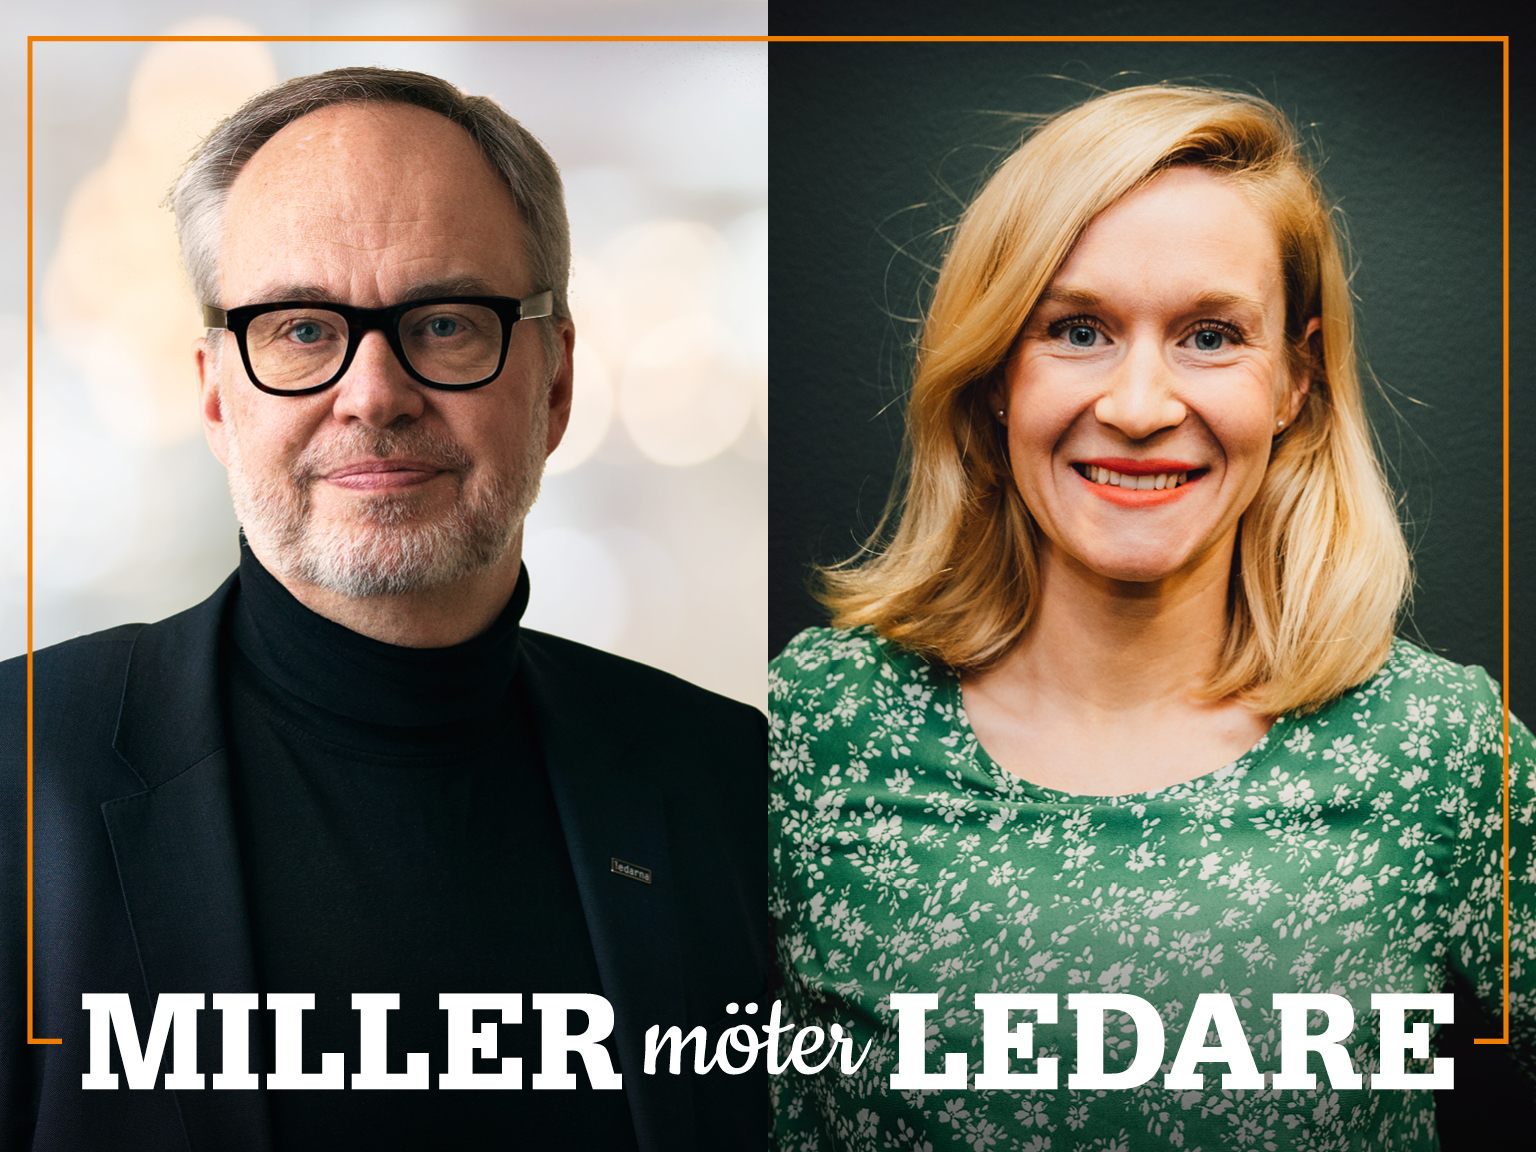 Omslag för podden Miller möter ledare – bild på Andreas Miller och Ida Troive.